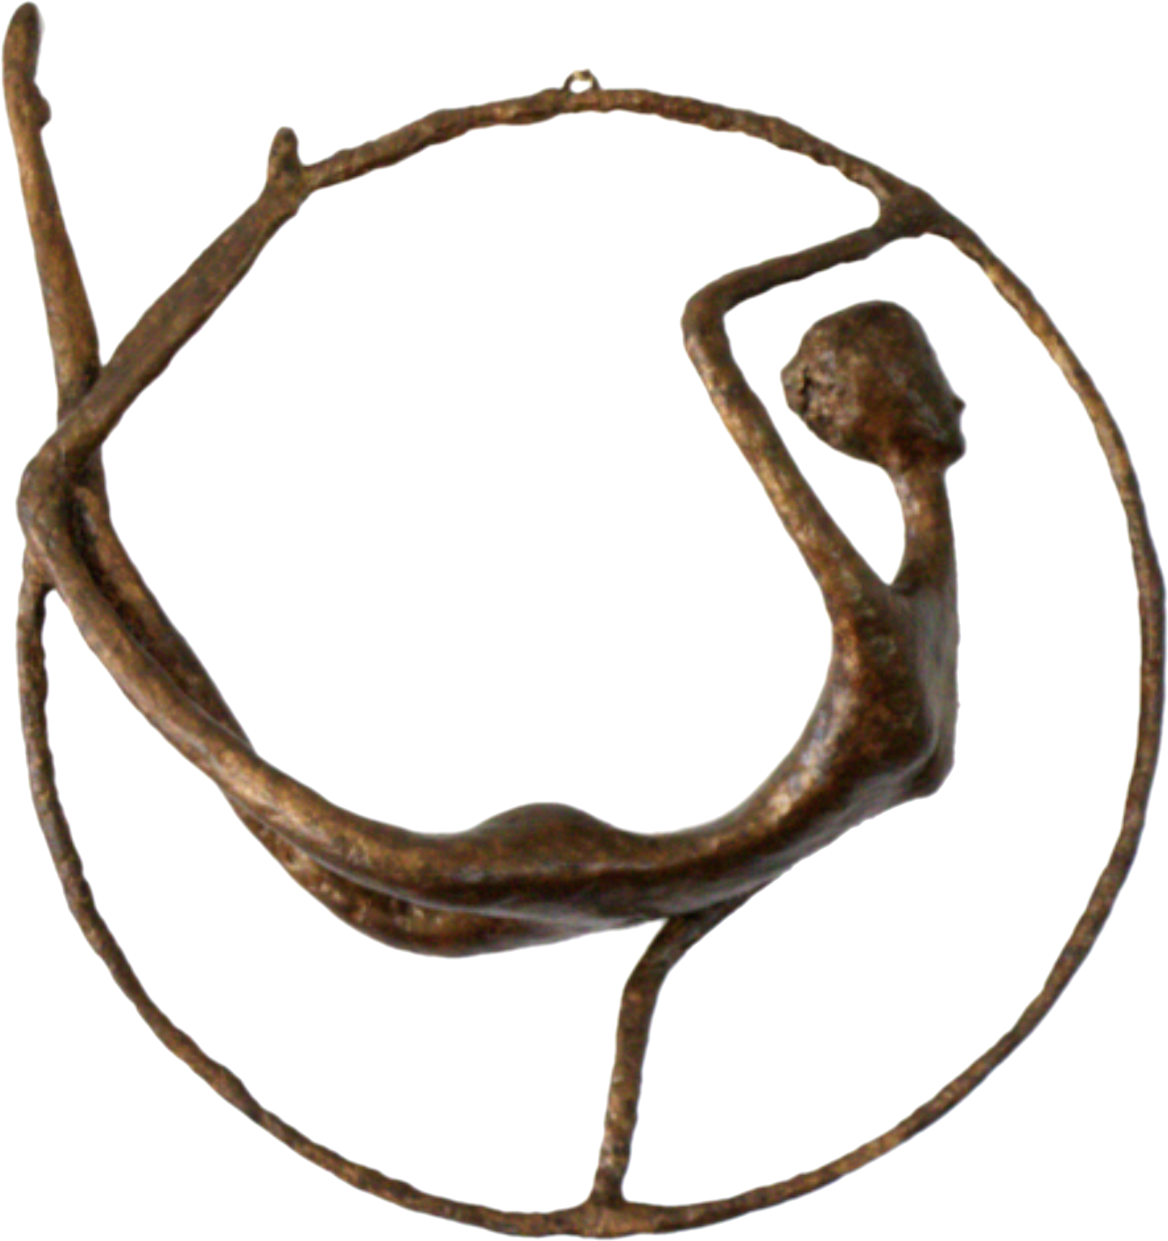 Olivia, sculpture n°140 en papier mâché, représente une danseuse dans un cercle. Mesure 42cm de hauteur, patine acrylique aspect bronze